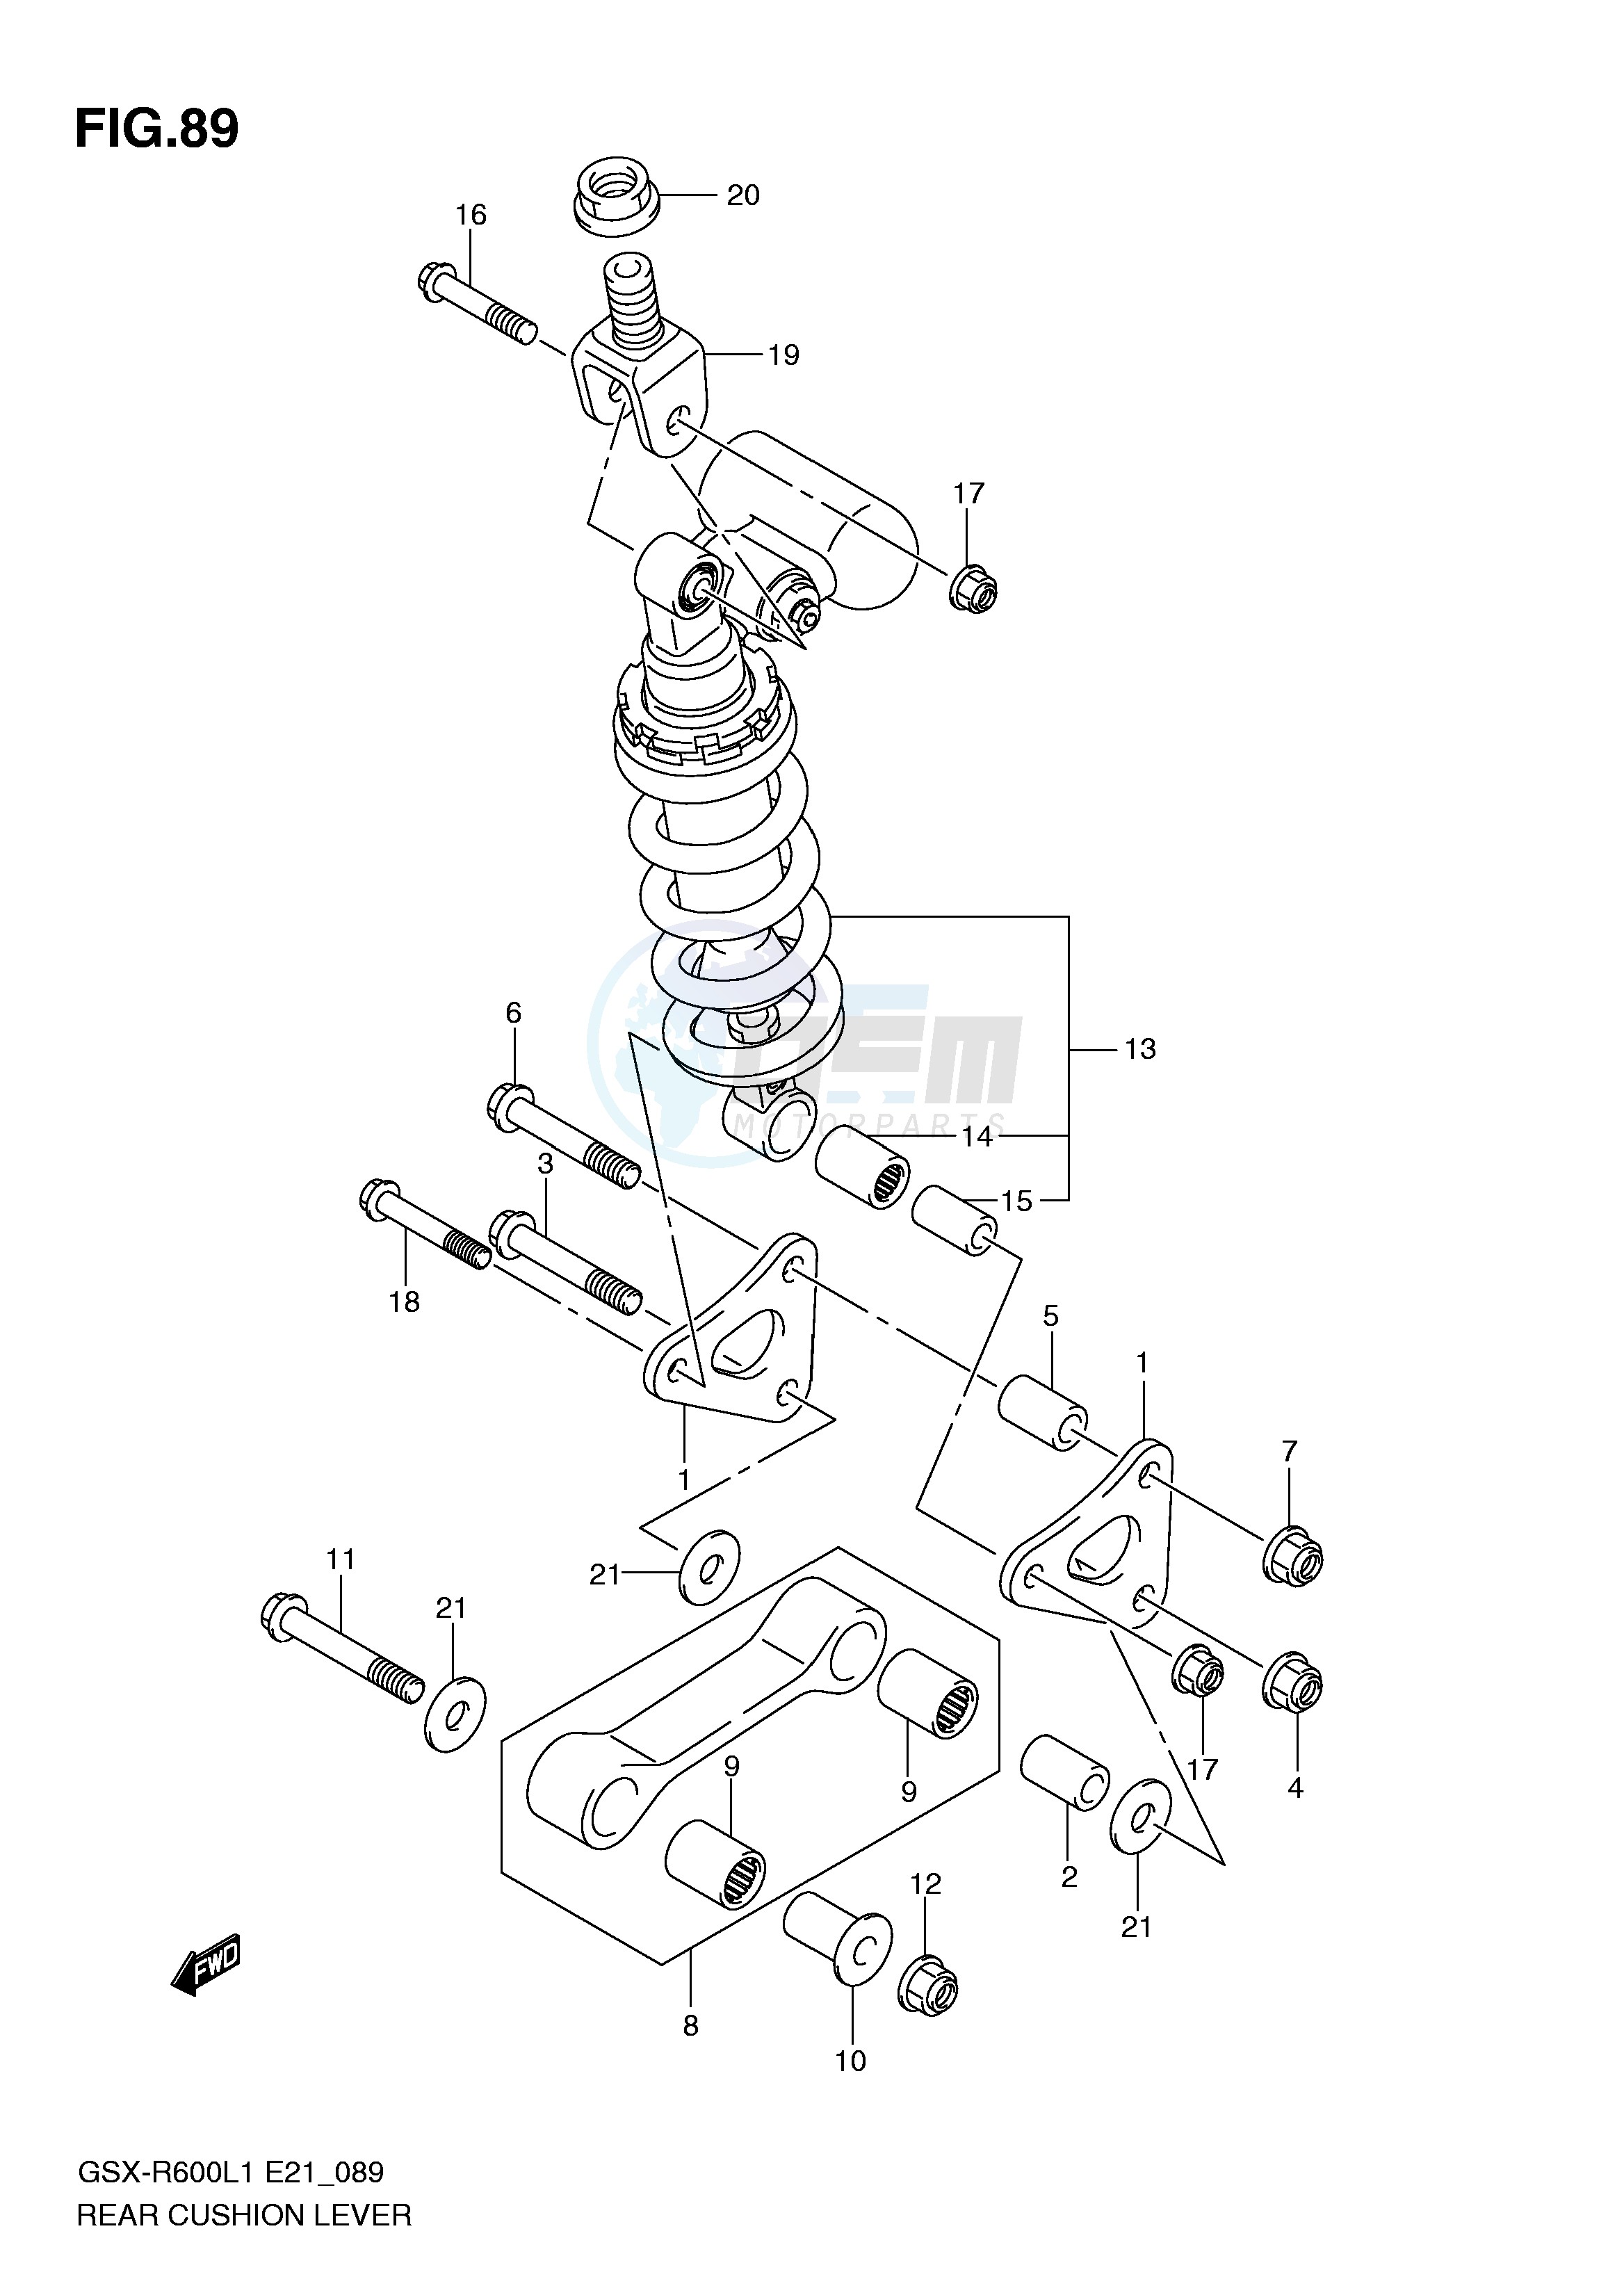 REAR CUSHION LEVER (GSX-R600UFL1 E21) blueprint